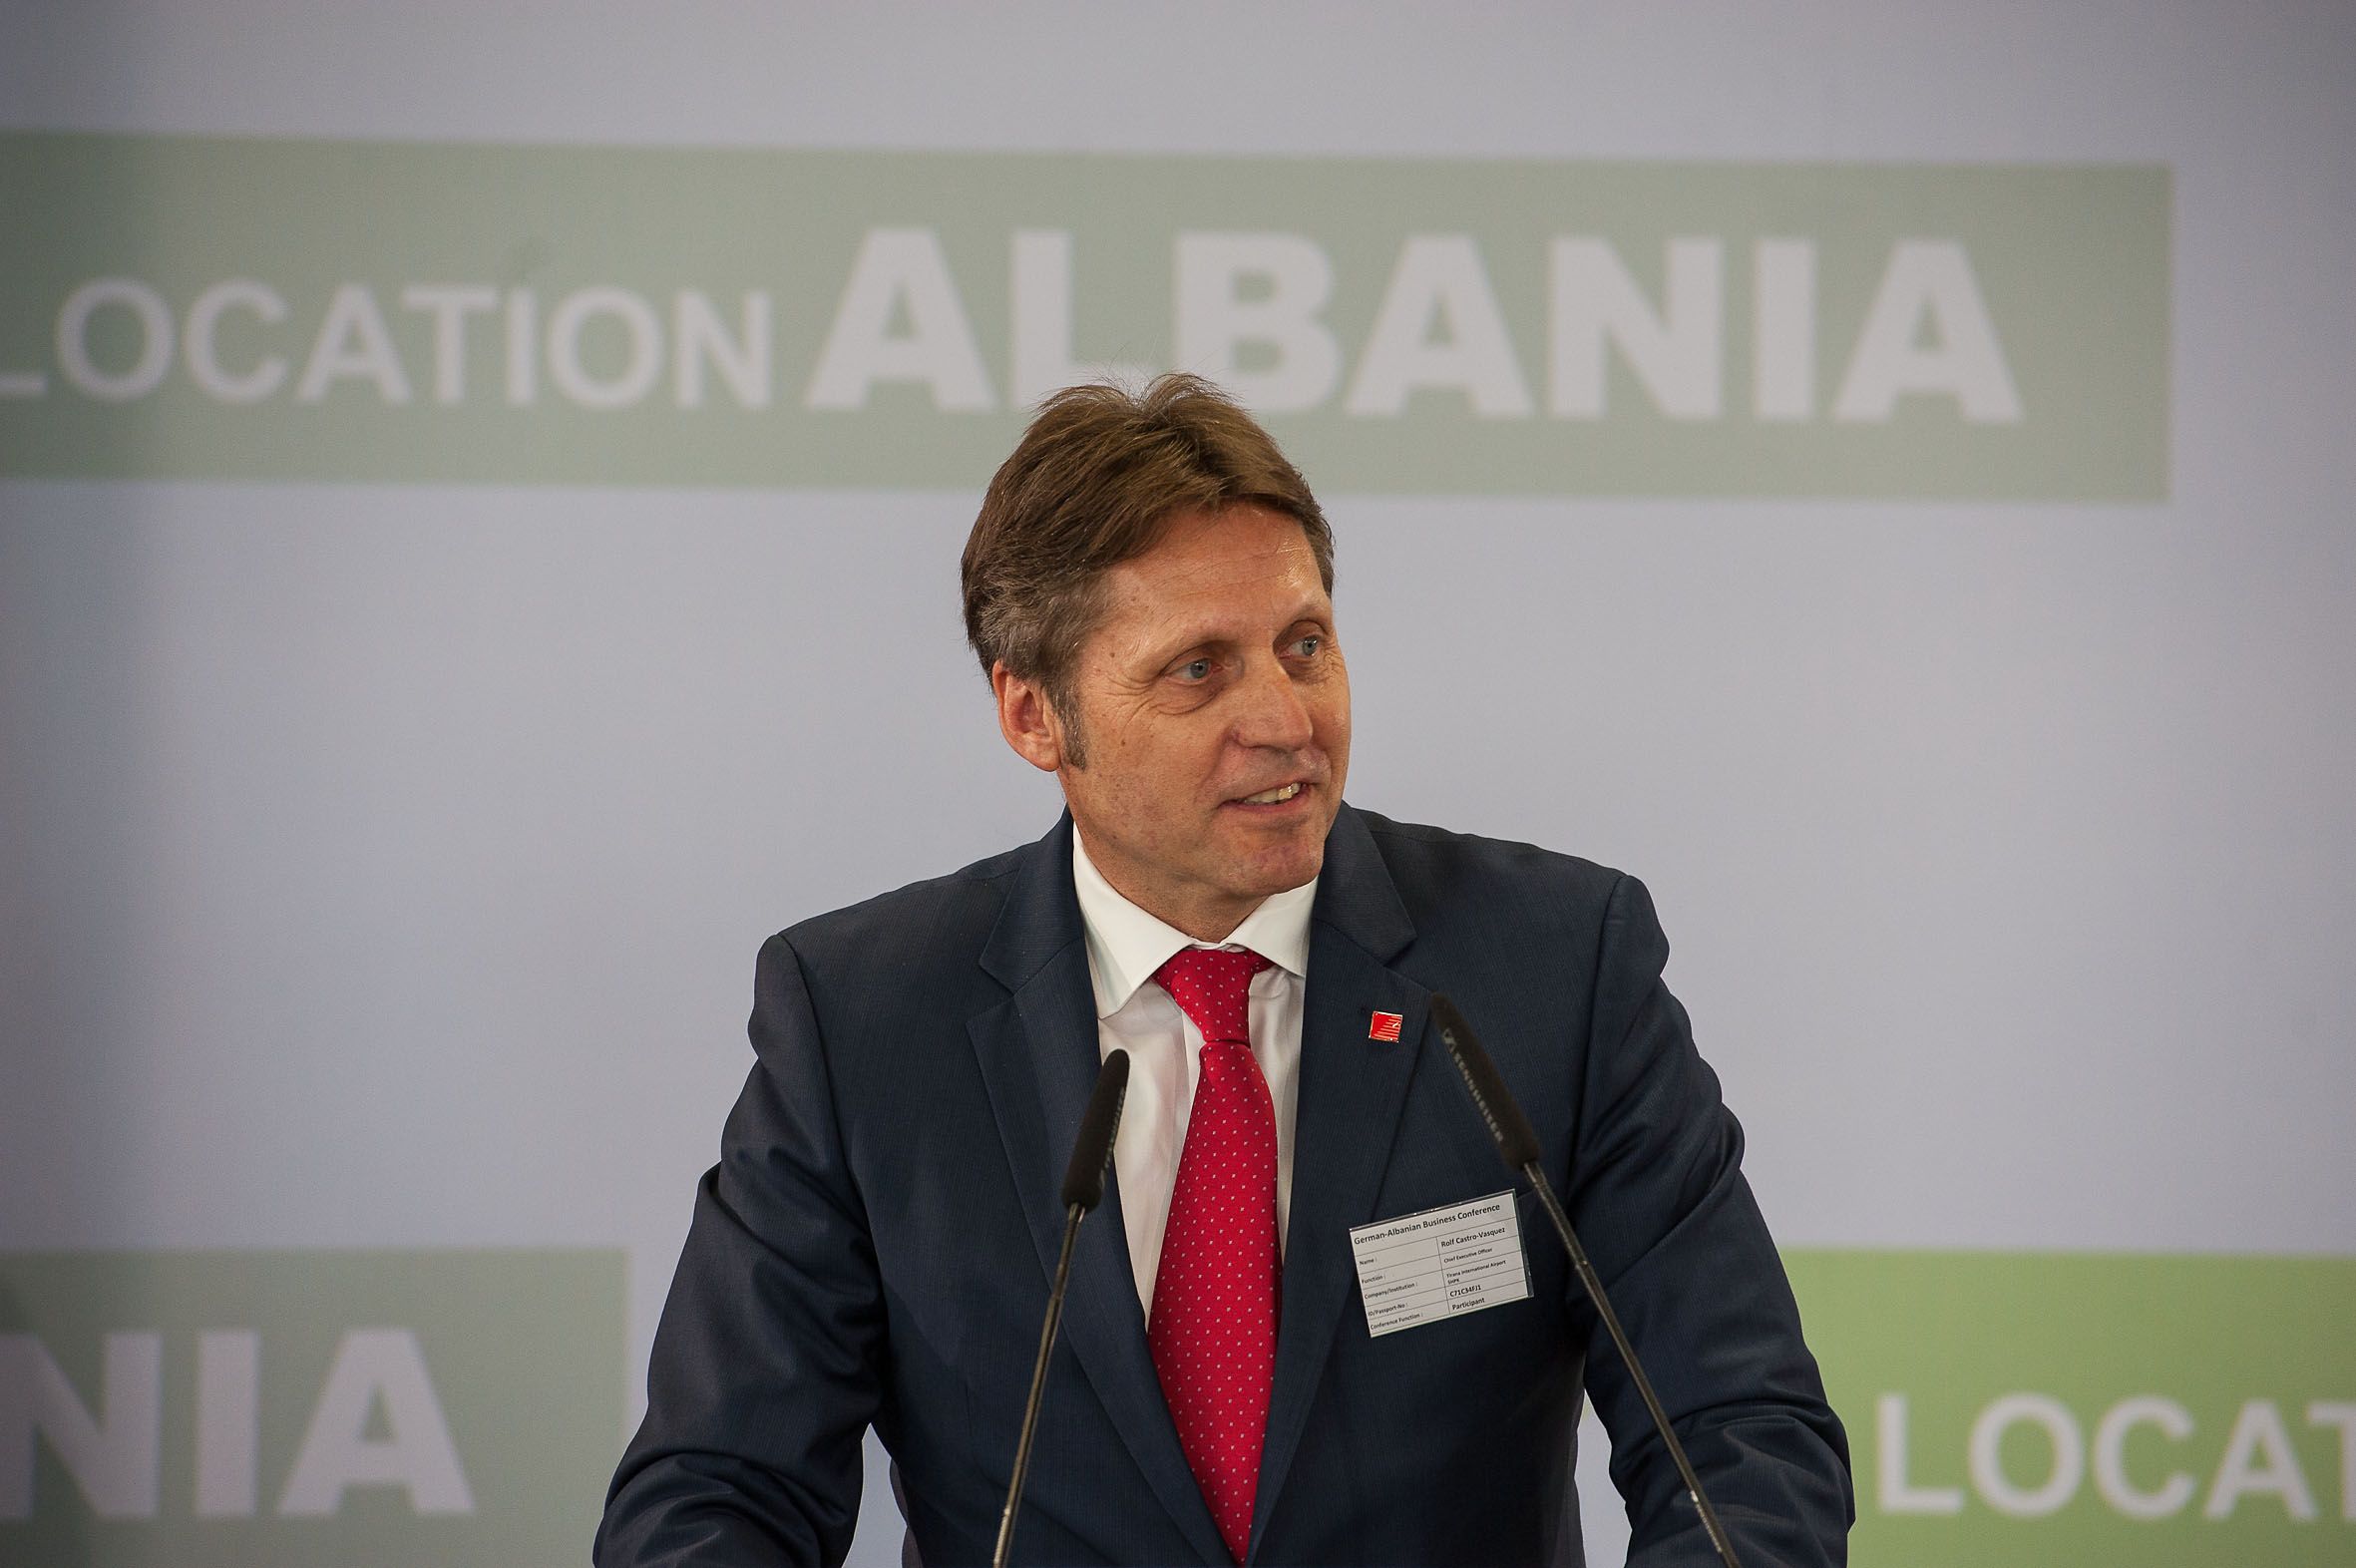 Deutsc- Albaninische Wirtschaftskonferenz 8.7.2015, Tirana